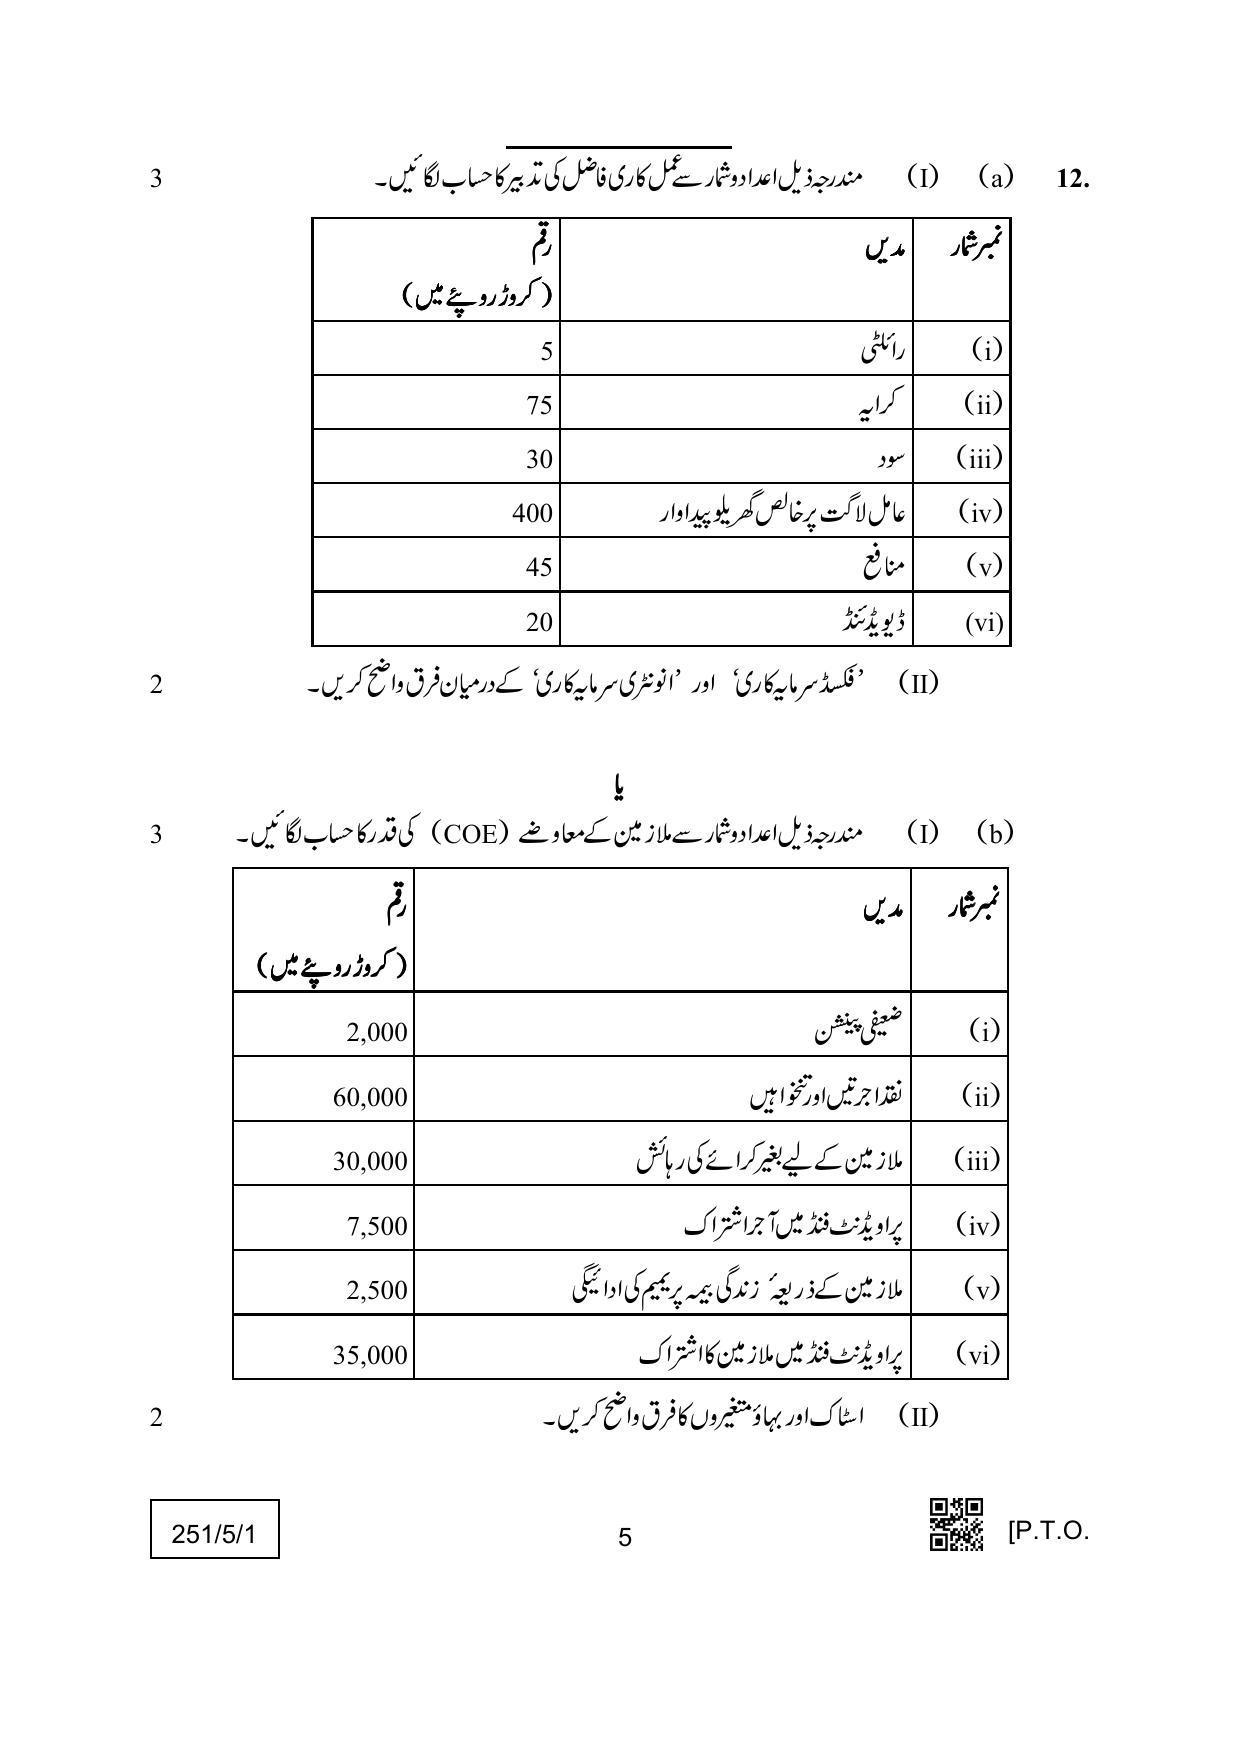 CBSE Class 12 251-5-1 (Economics) Urdu Version 2022 Question Paper - Page 5